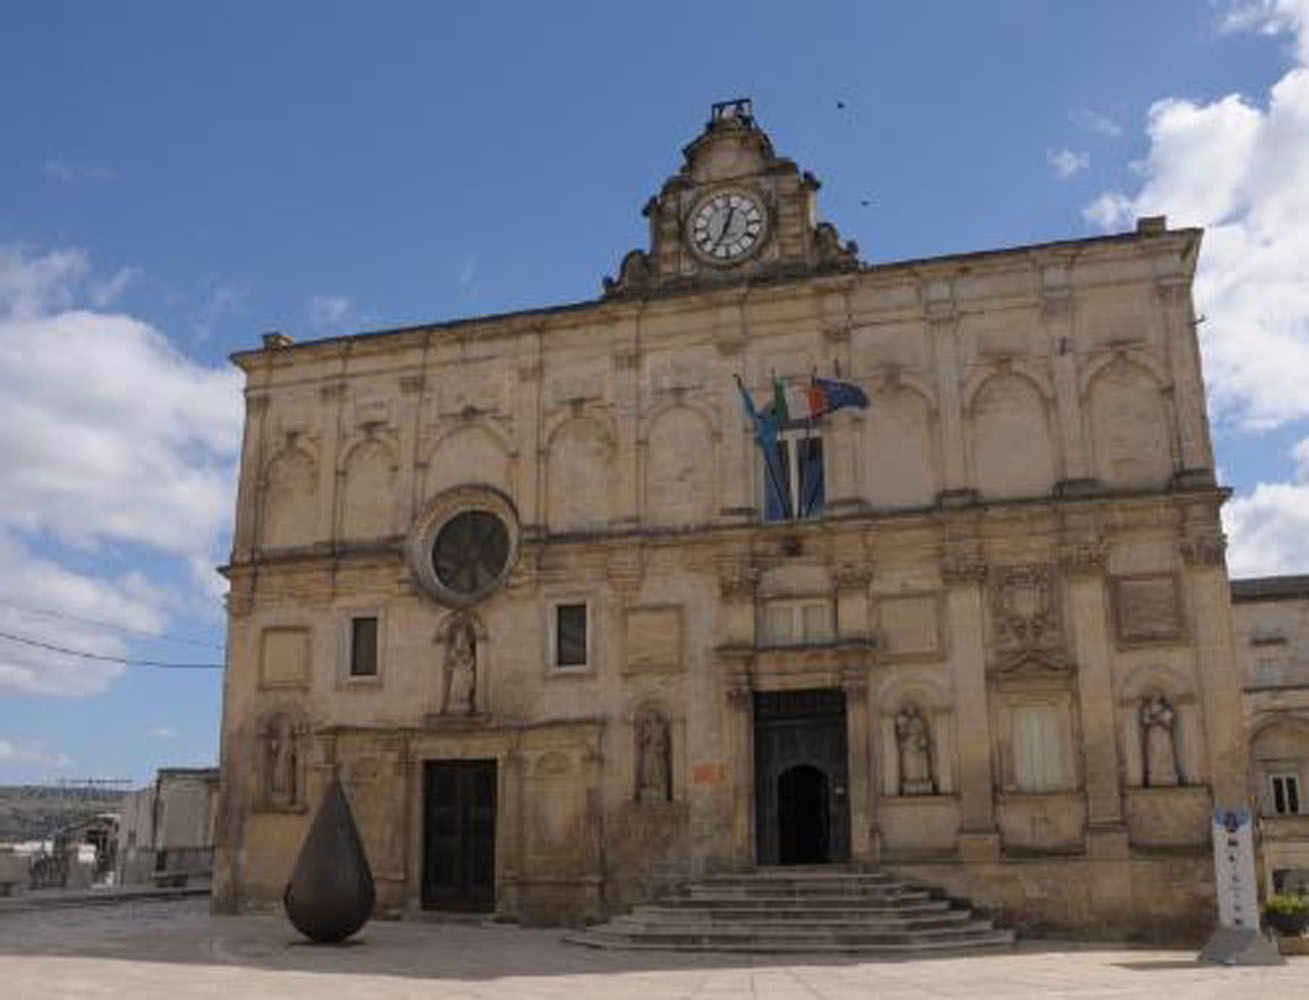 Matera – Palazzo Lanfranchi – Restauro e valorizzazione di Palazzo Lanfranchi, sede del Museo Nazionale d’Arte Medievale e Moderna